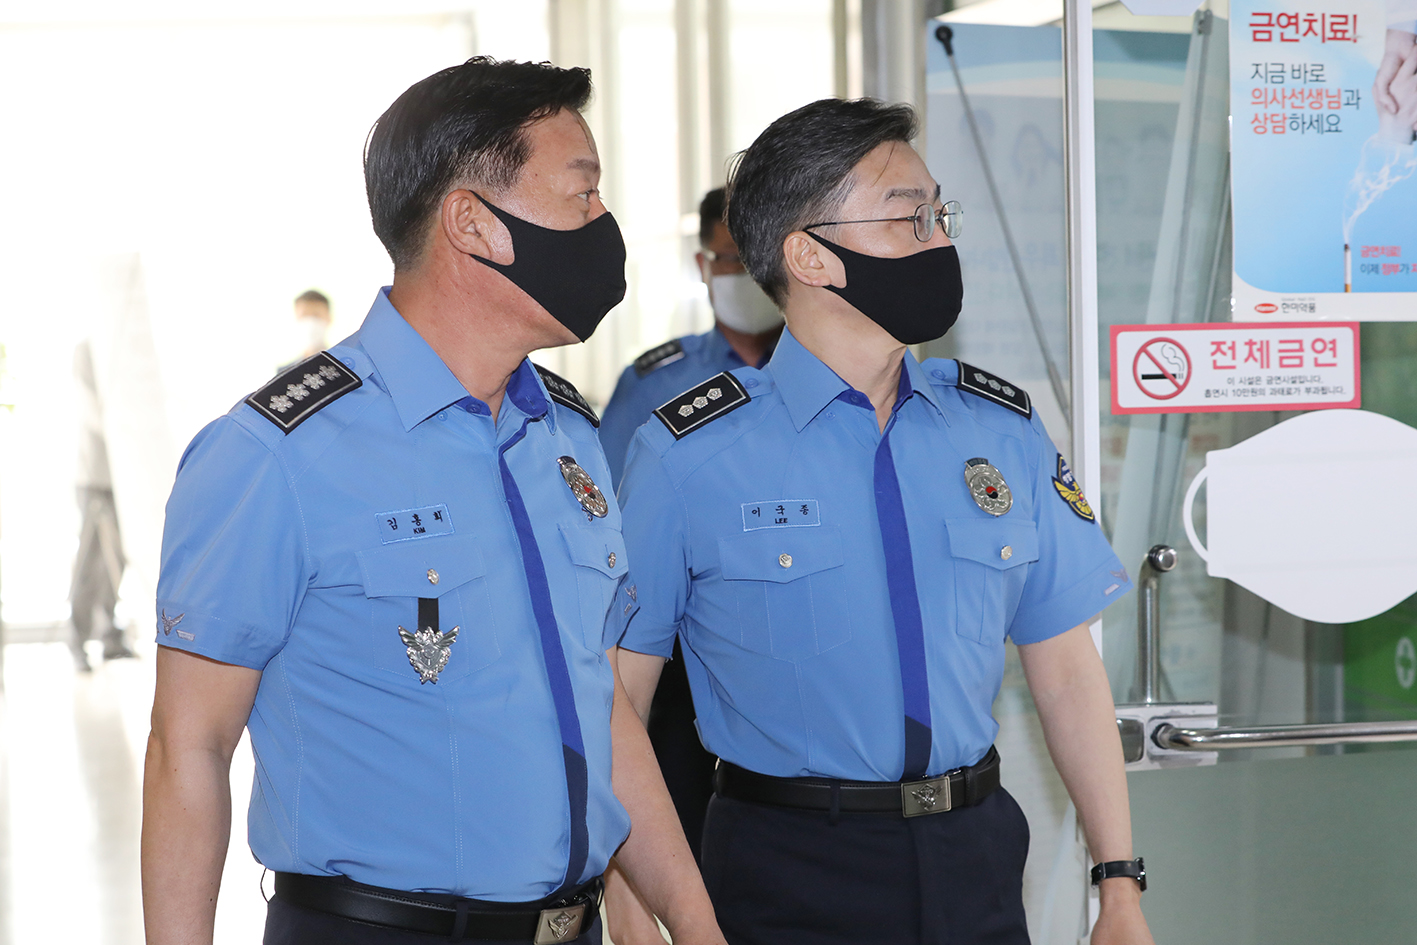 코로나19 백신을 접종하기 위해 병원으로 들어가는 김홍희 해양경찰청장(왼쪽)과 이국종 교수(오른쪽)